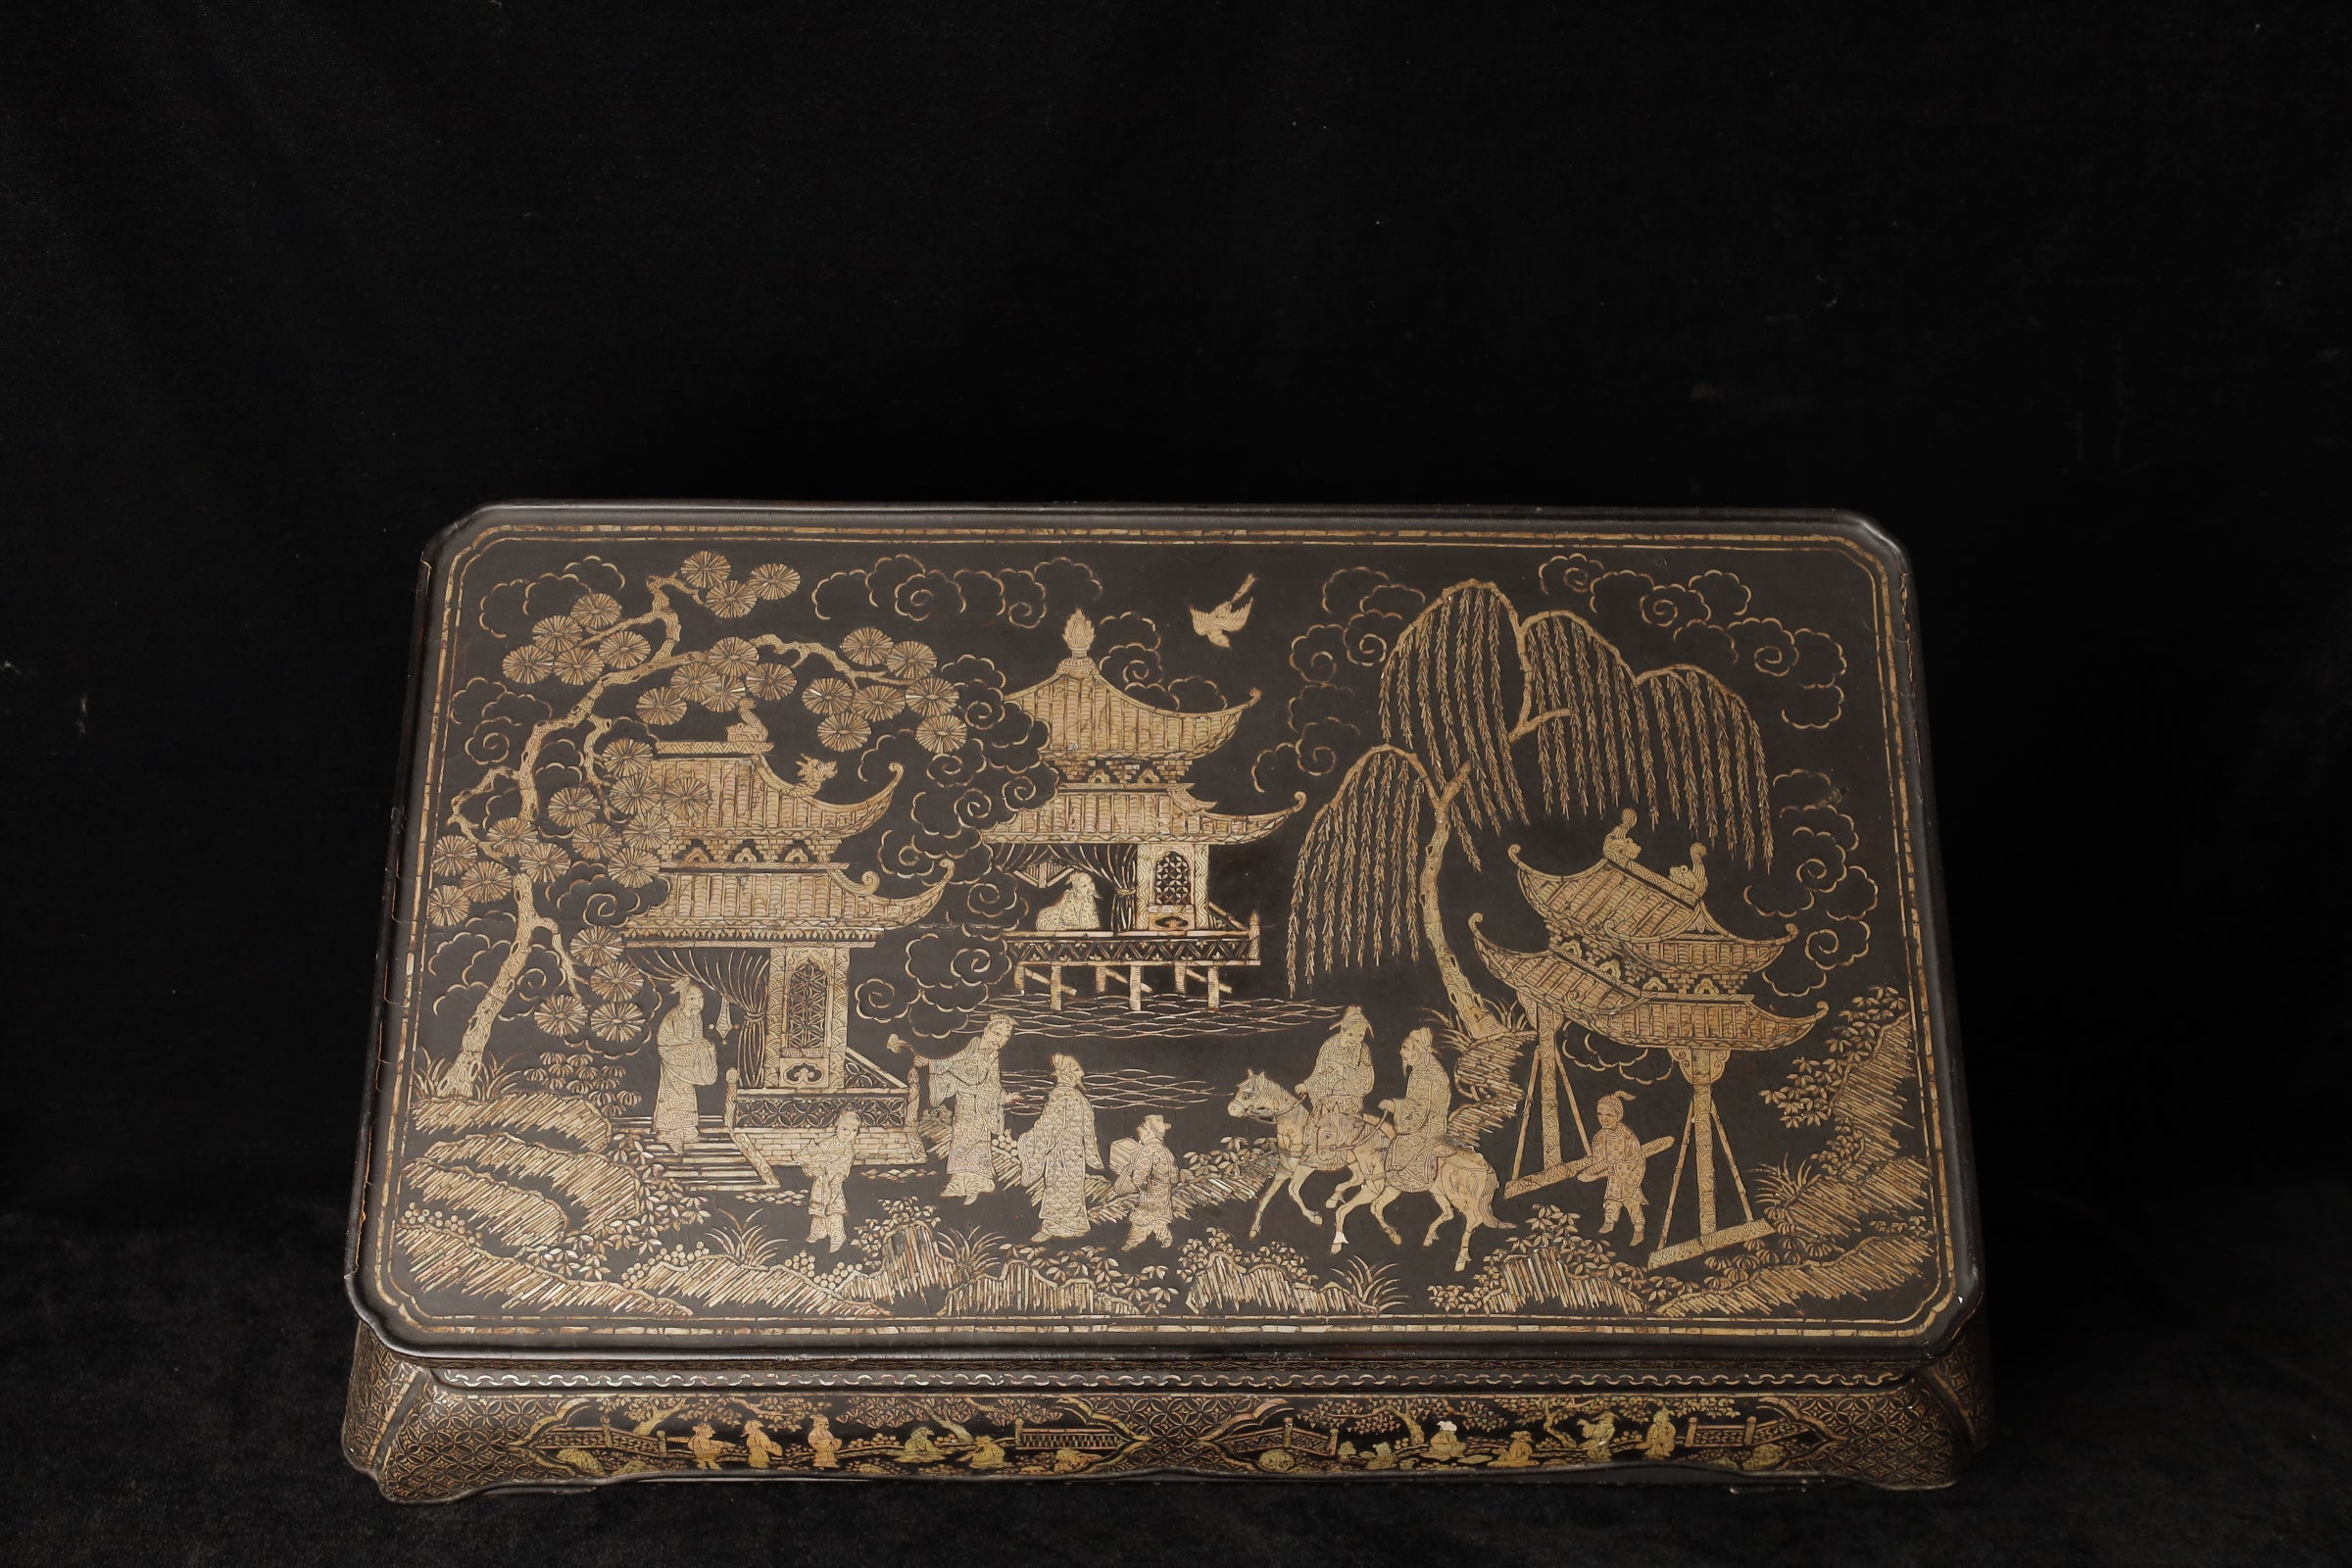 Erleben Sie die Pracht der Kunst der Ming-Dynastie mit diesem herrlichen Kang-Tisch (SKU: ZD71), einem außergewöhnlichen Möbelstück aus dem 16. bis 17. Jahrhundert. Dieser Tisch ist nicht nur ein funktioneller Gegenstand, sondern auch eine Leinwand